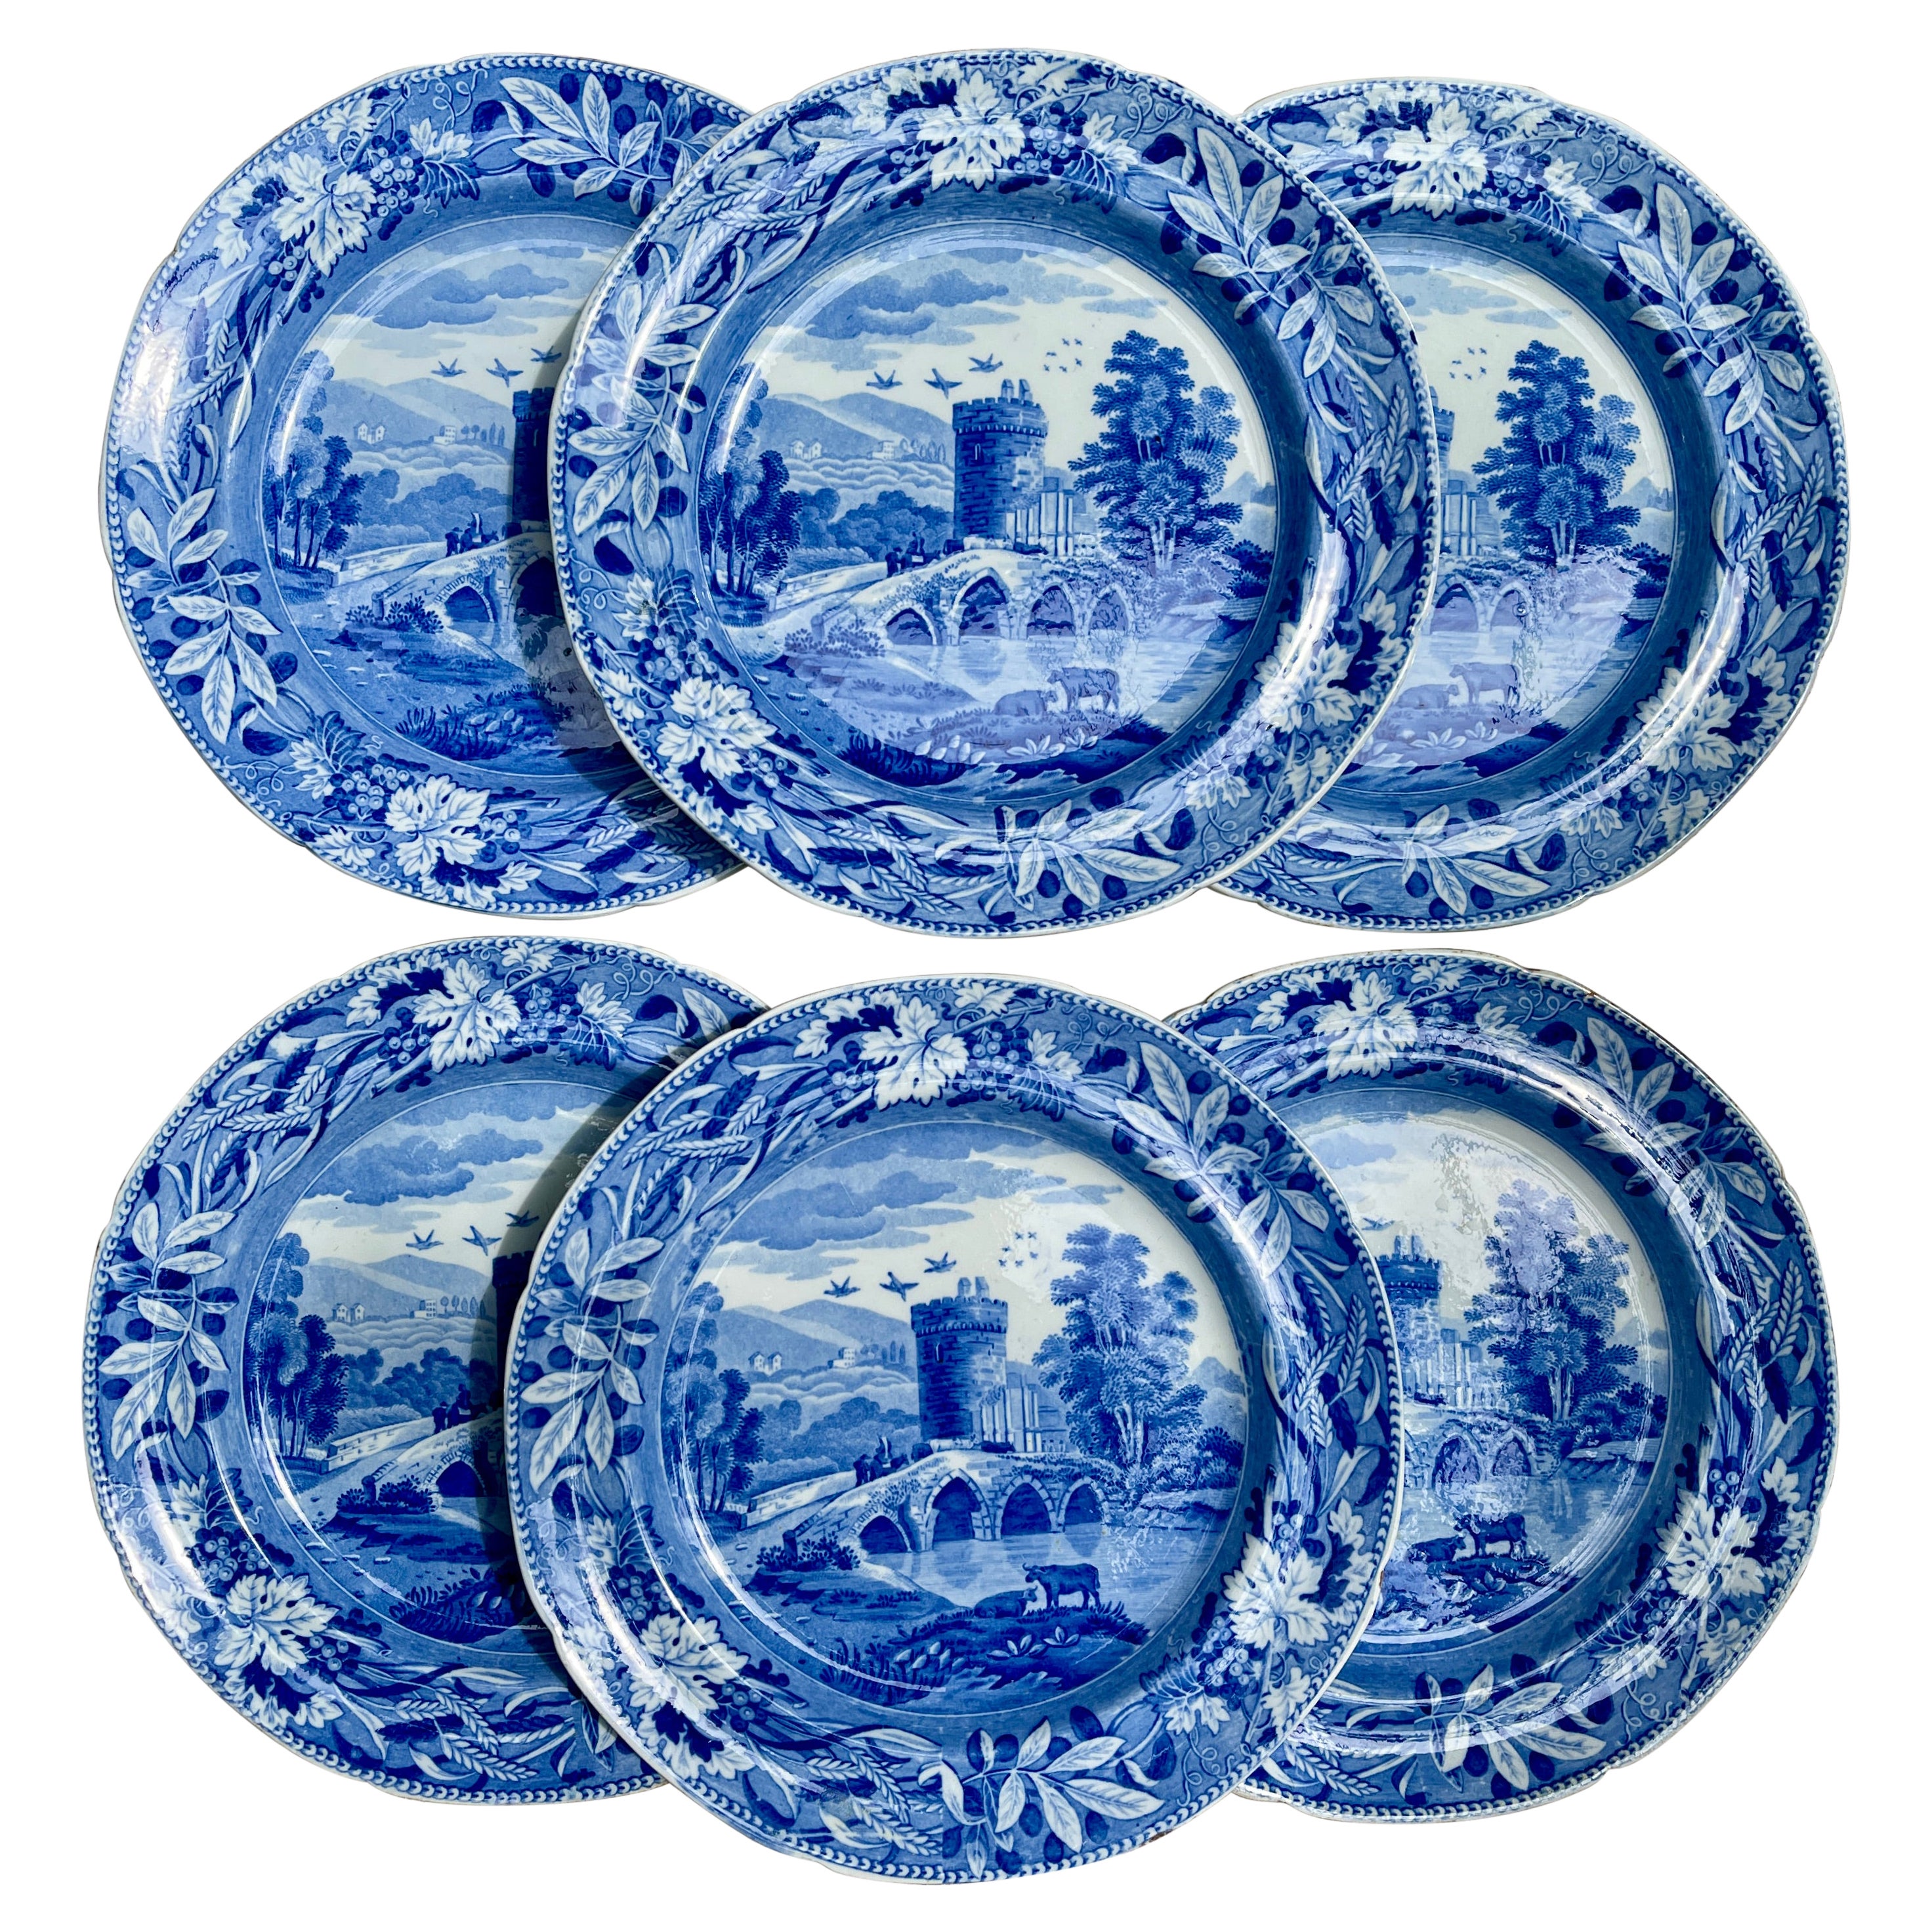 Assiettes plates en porcelaine bleue 'Bridge of Lucano' de Josiah Spode, vers 1820, lot/6